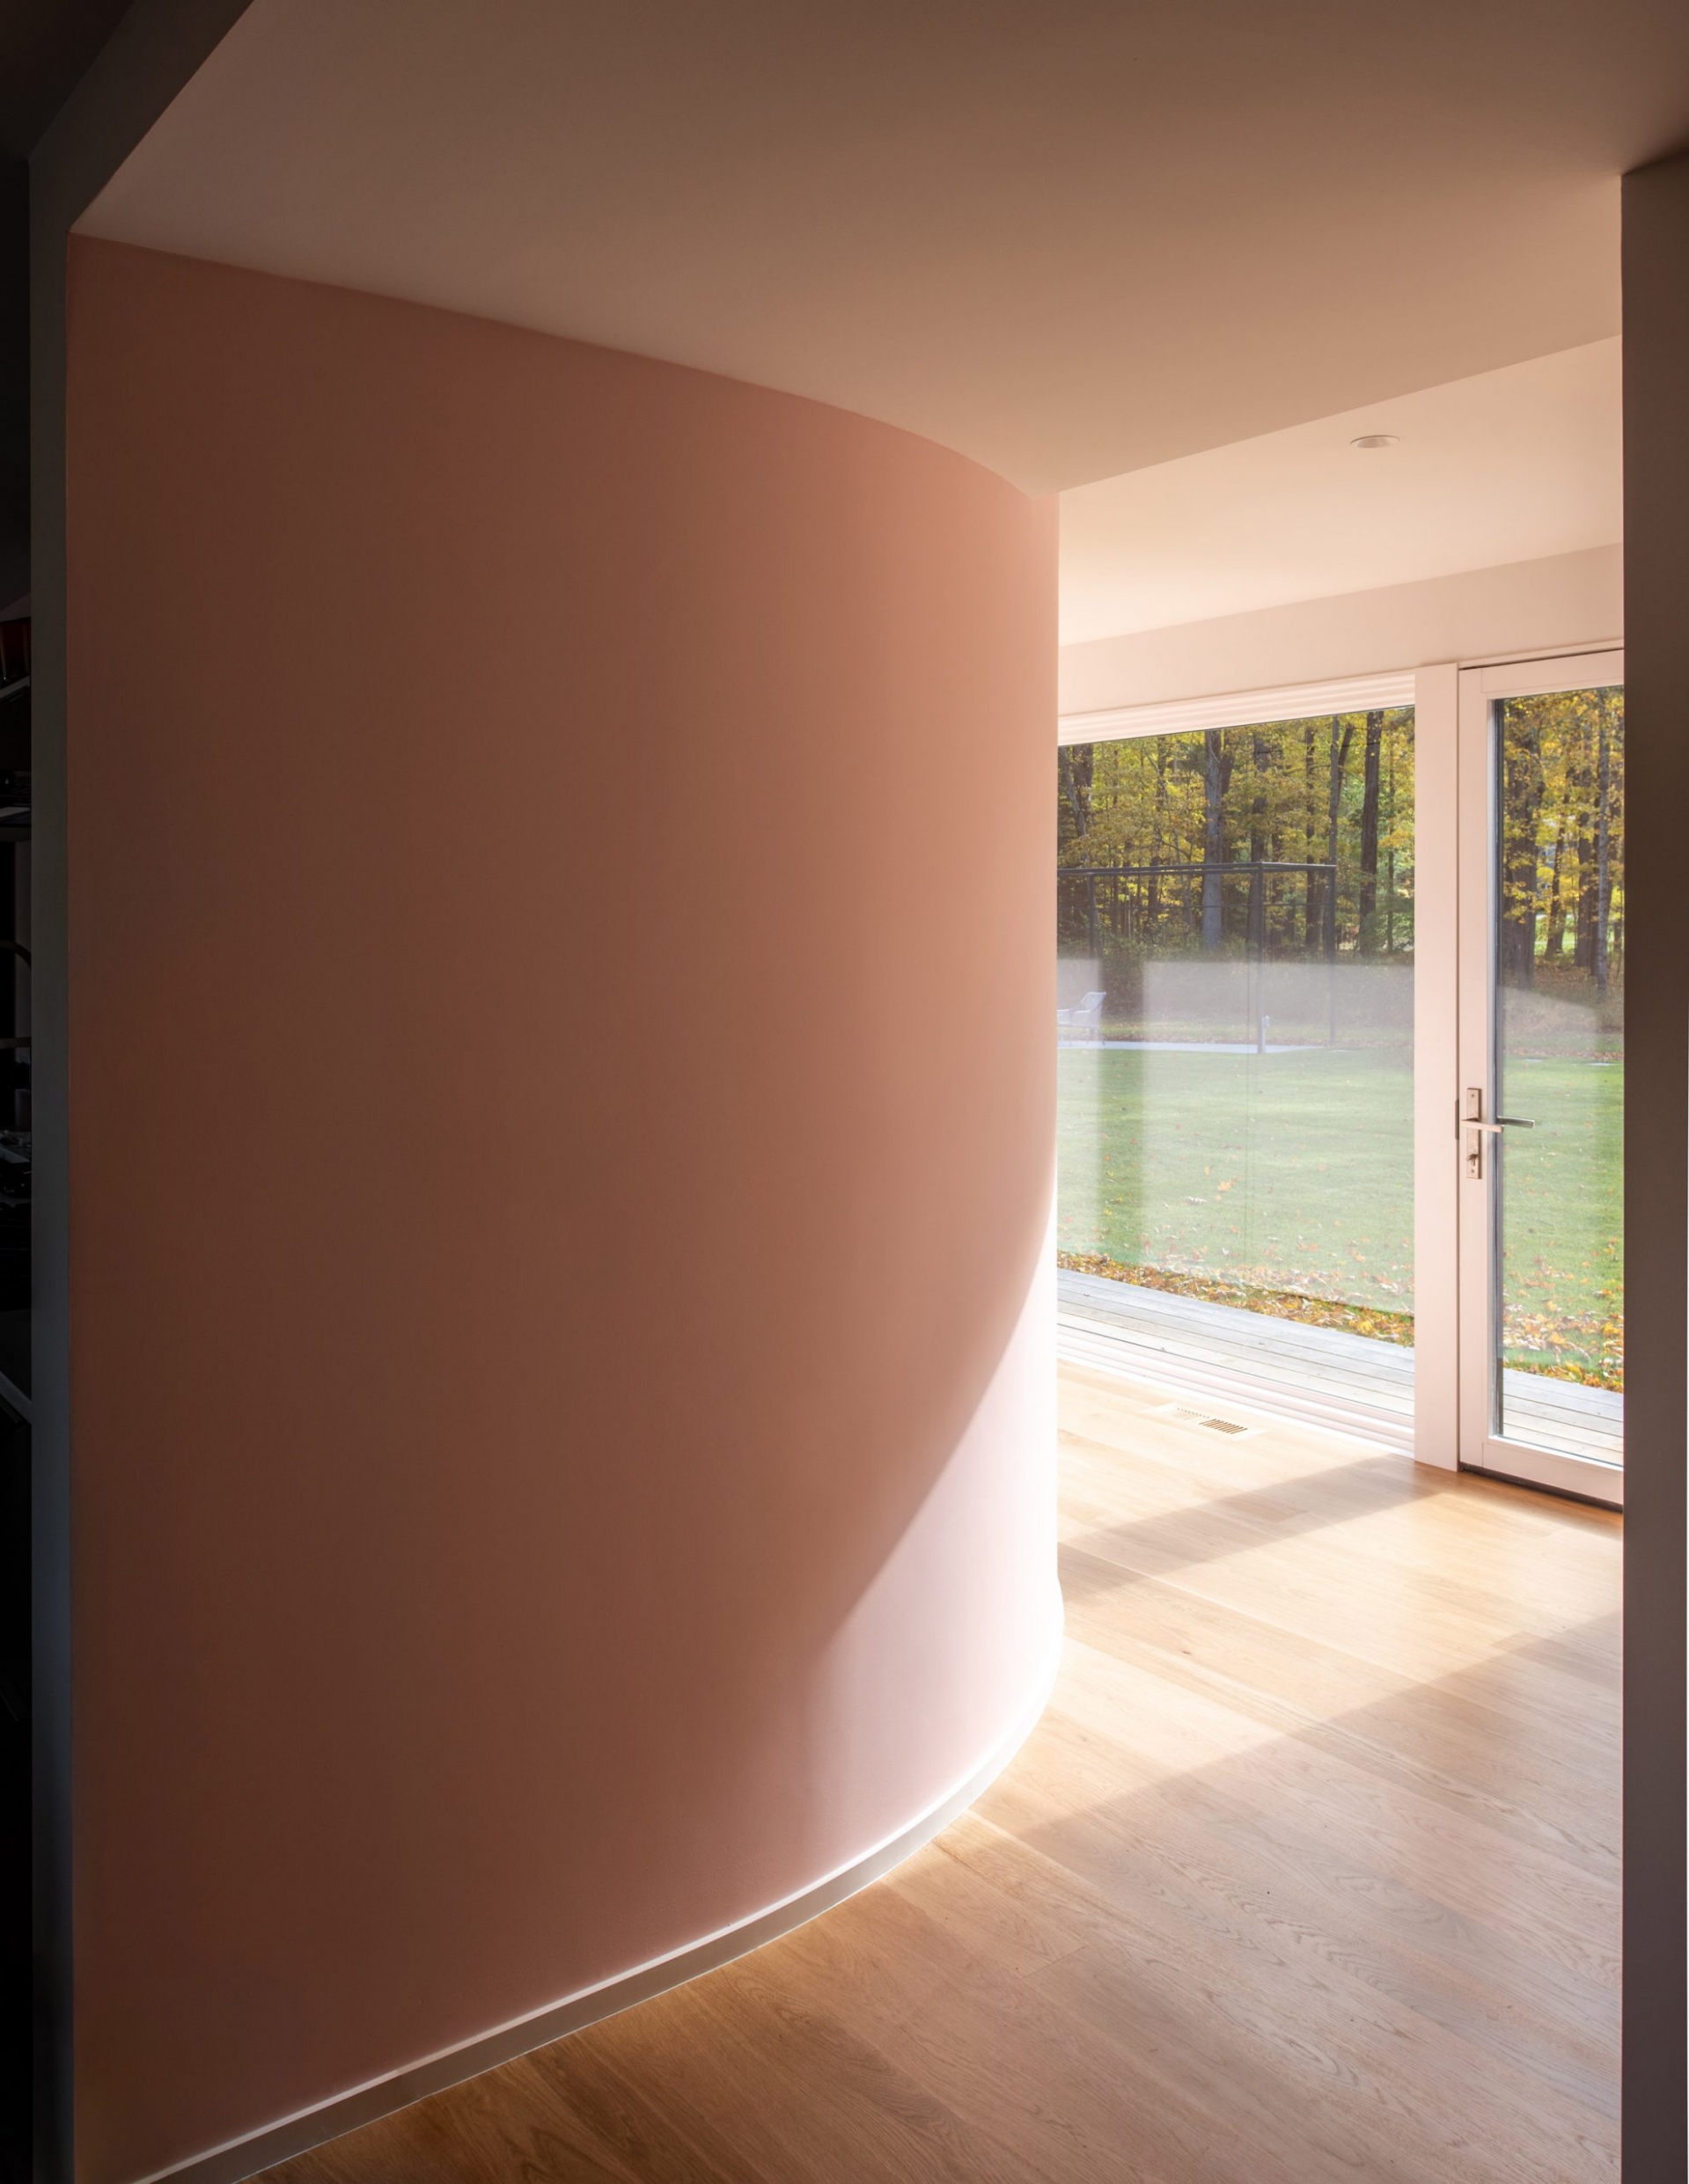 Cũng ở tầng trệt của ngôi nhà, các kiến trúc sư của Vondalwig Architecture đã tạo ra một bức tường với đường cong mềm mại dẫn lối, thay thế cho những bức tường vuông vức thường thấy. Bức tường được sơn màu hồng pastel ngọt ngào, tạo sự liên kết với nội thất của phòng khách thứ hai được mở rộng ở trên.